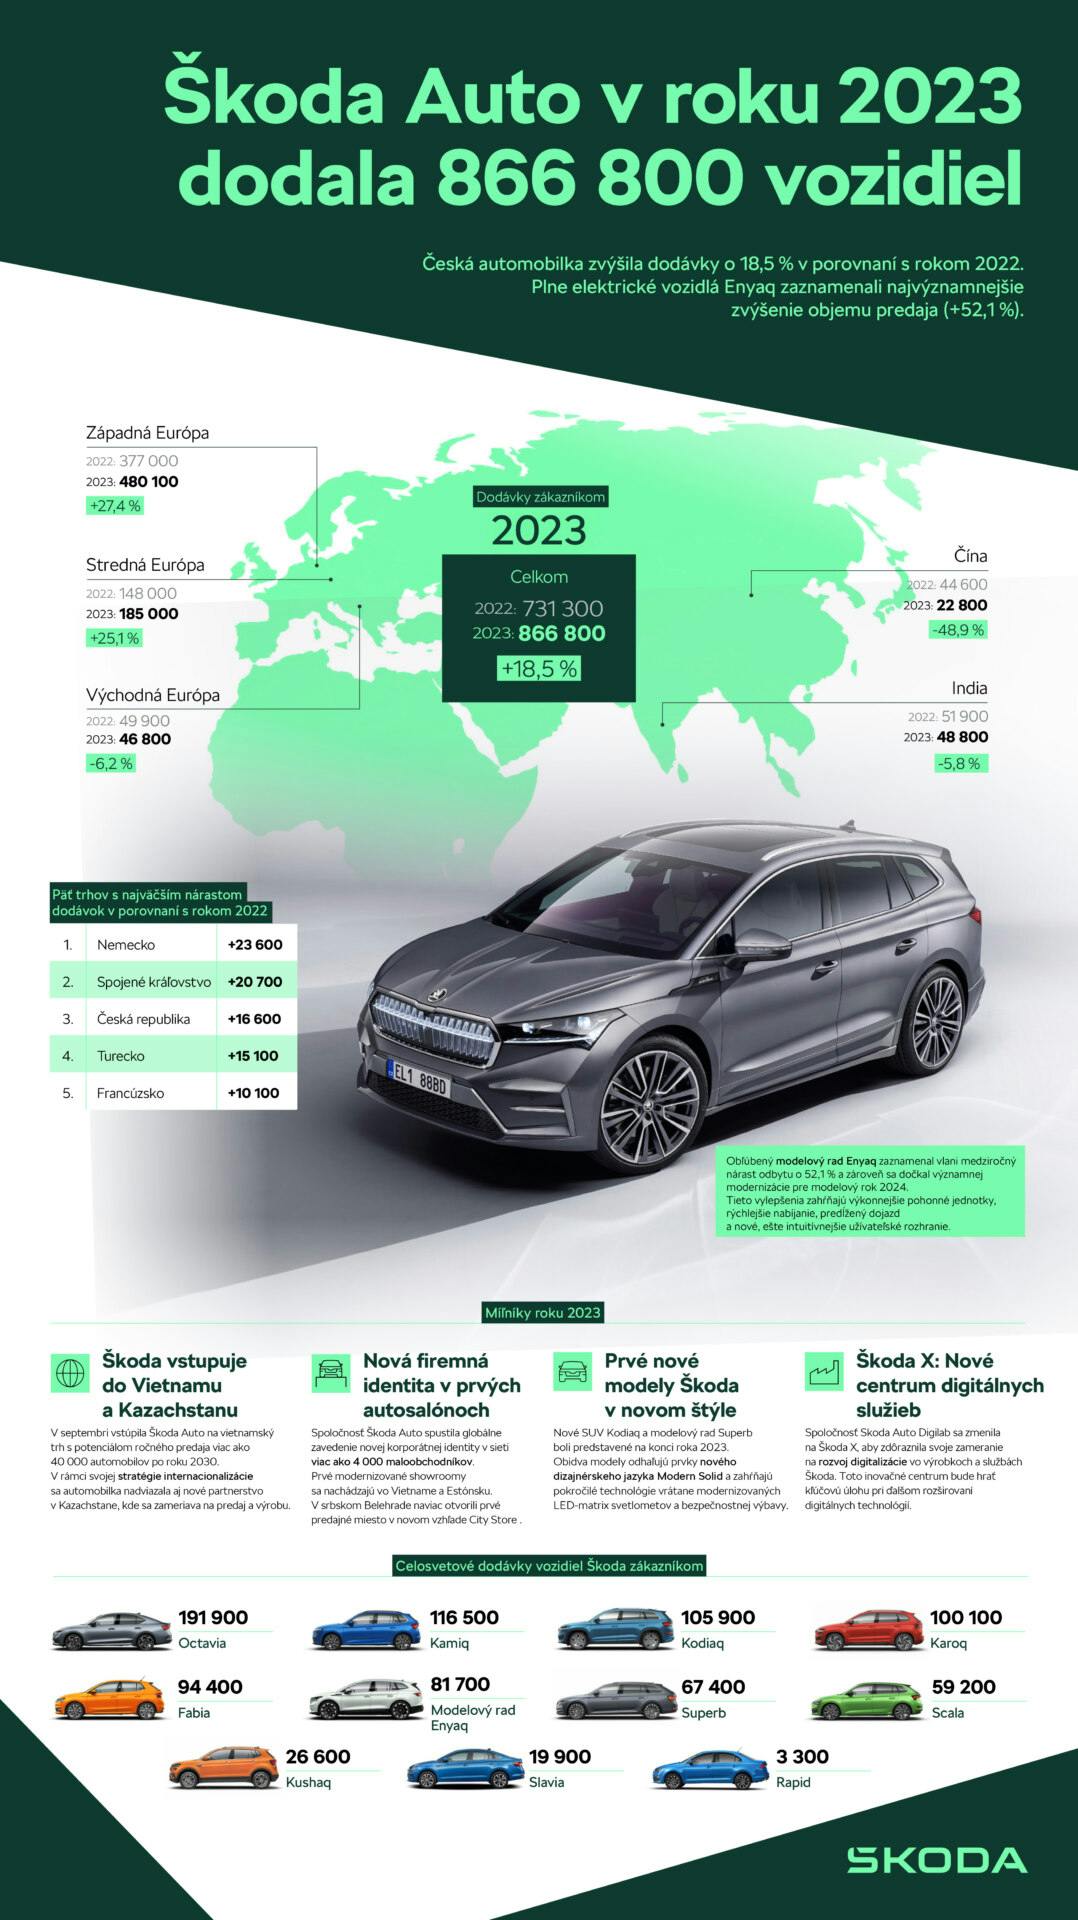 Škoda Auto dodala v roku 2023 celosvetovo 866 800 vozidiel